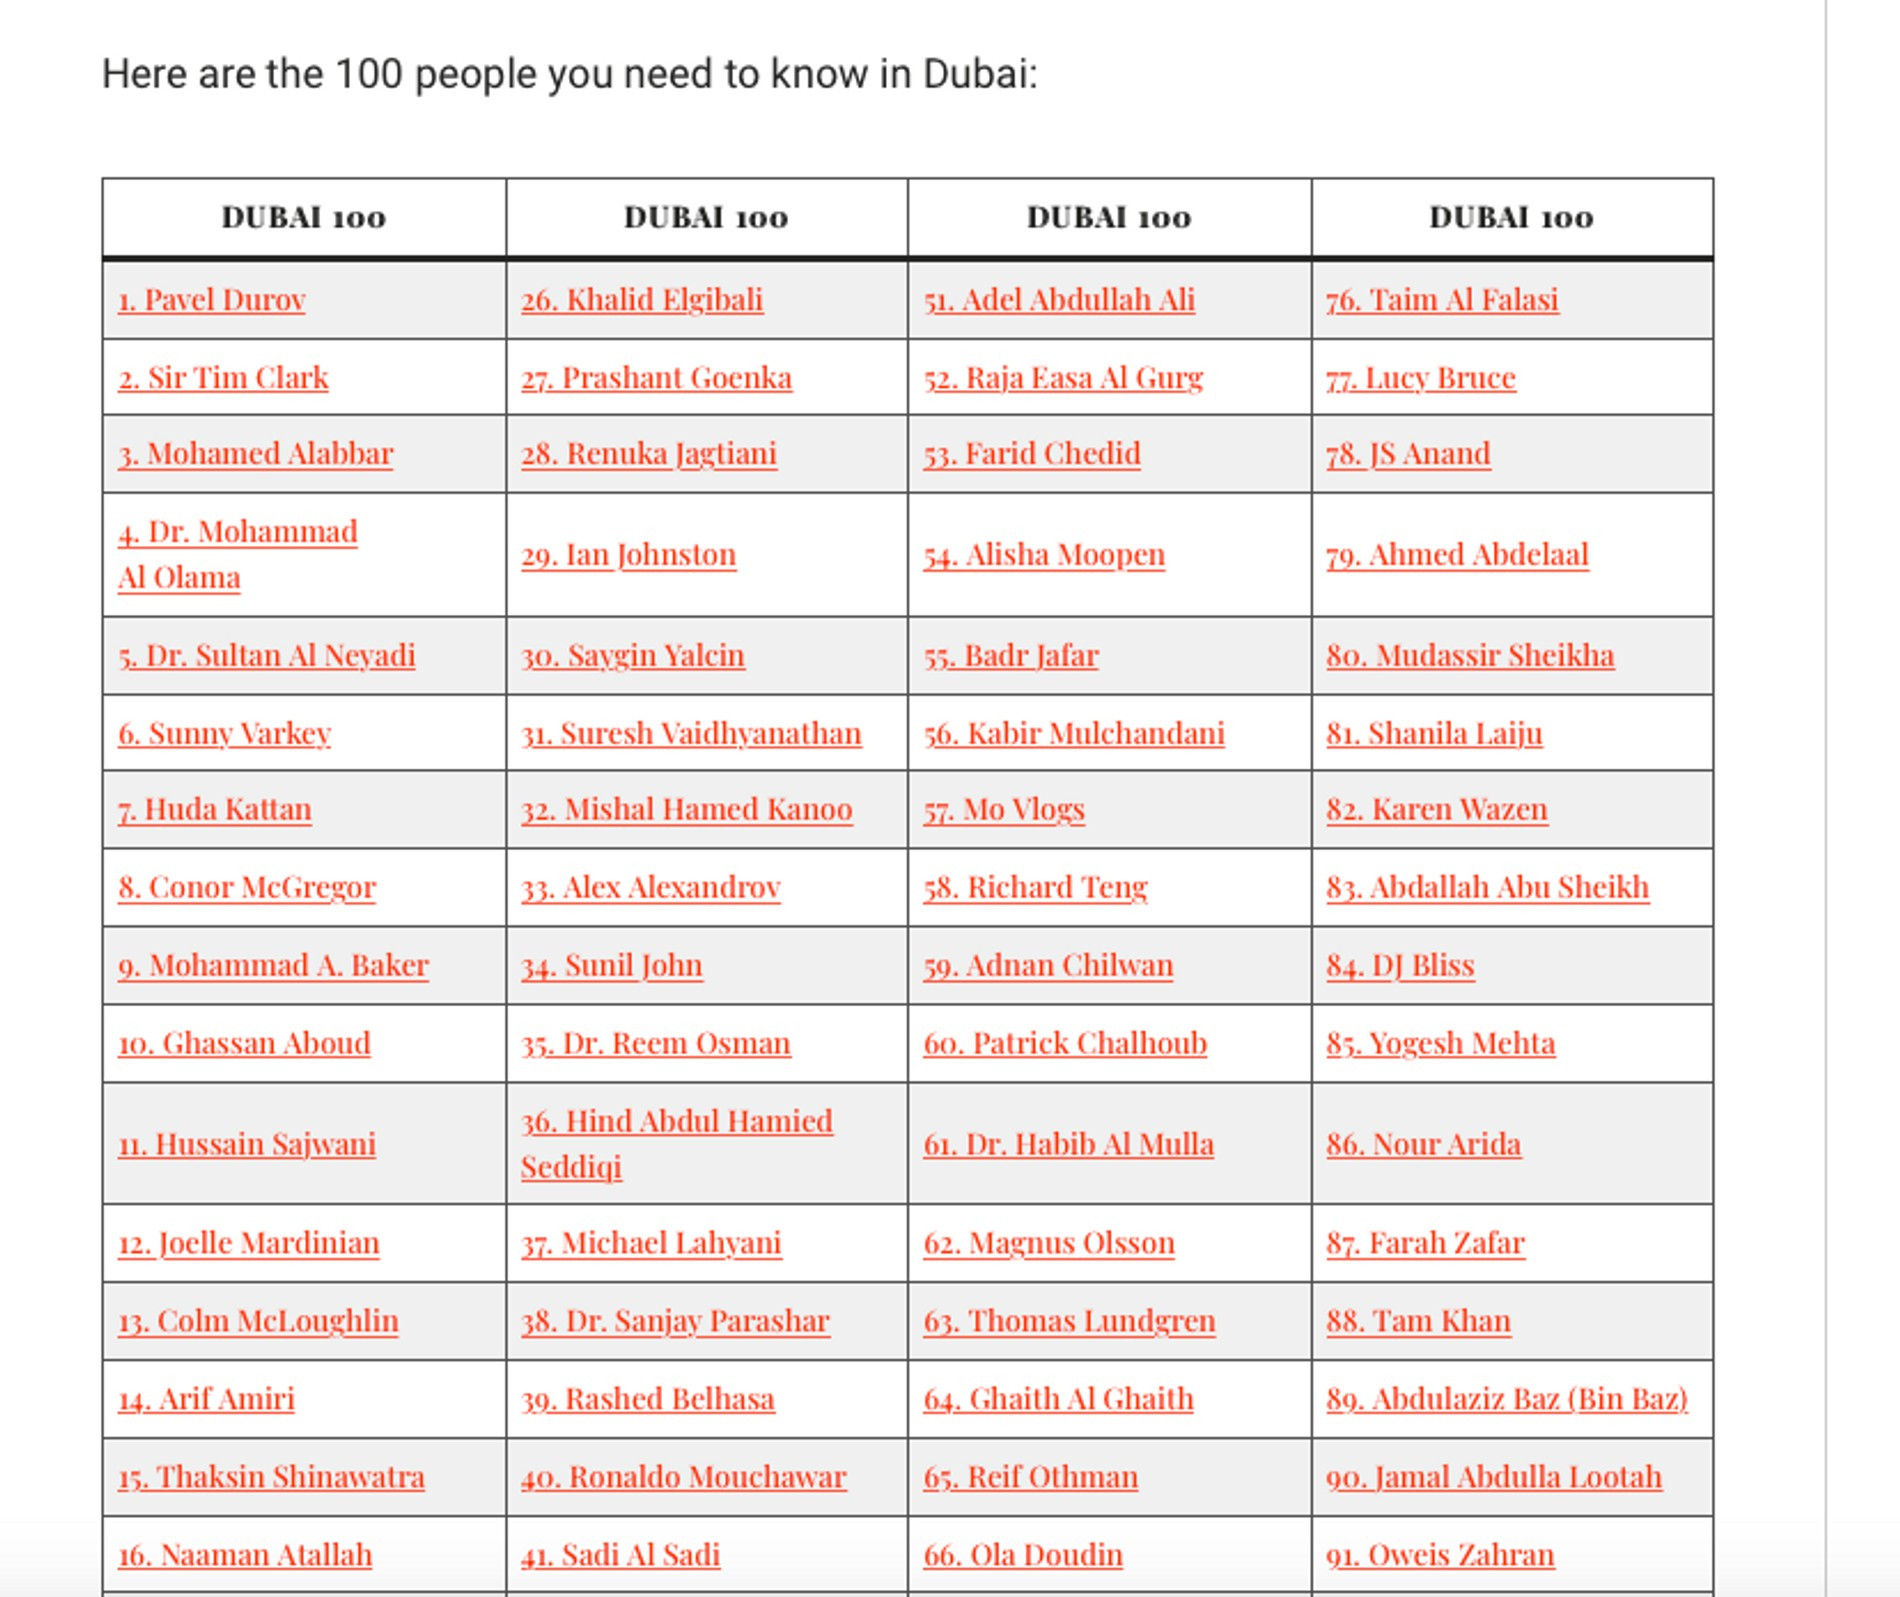 Рейтинг самых влиятельных людей Дубая
Фото: Arabian Business